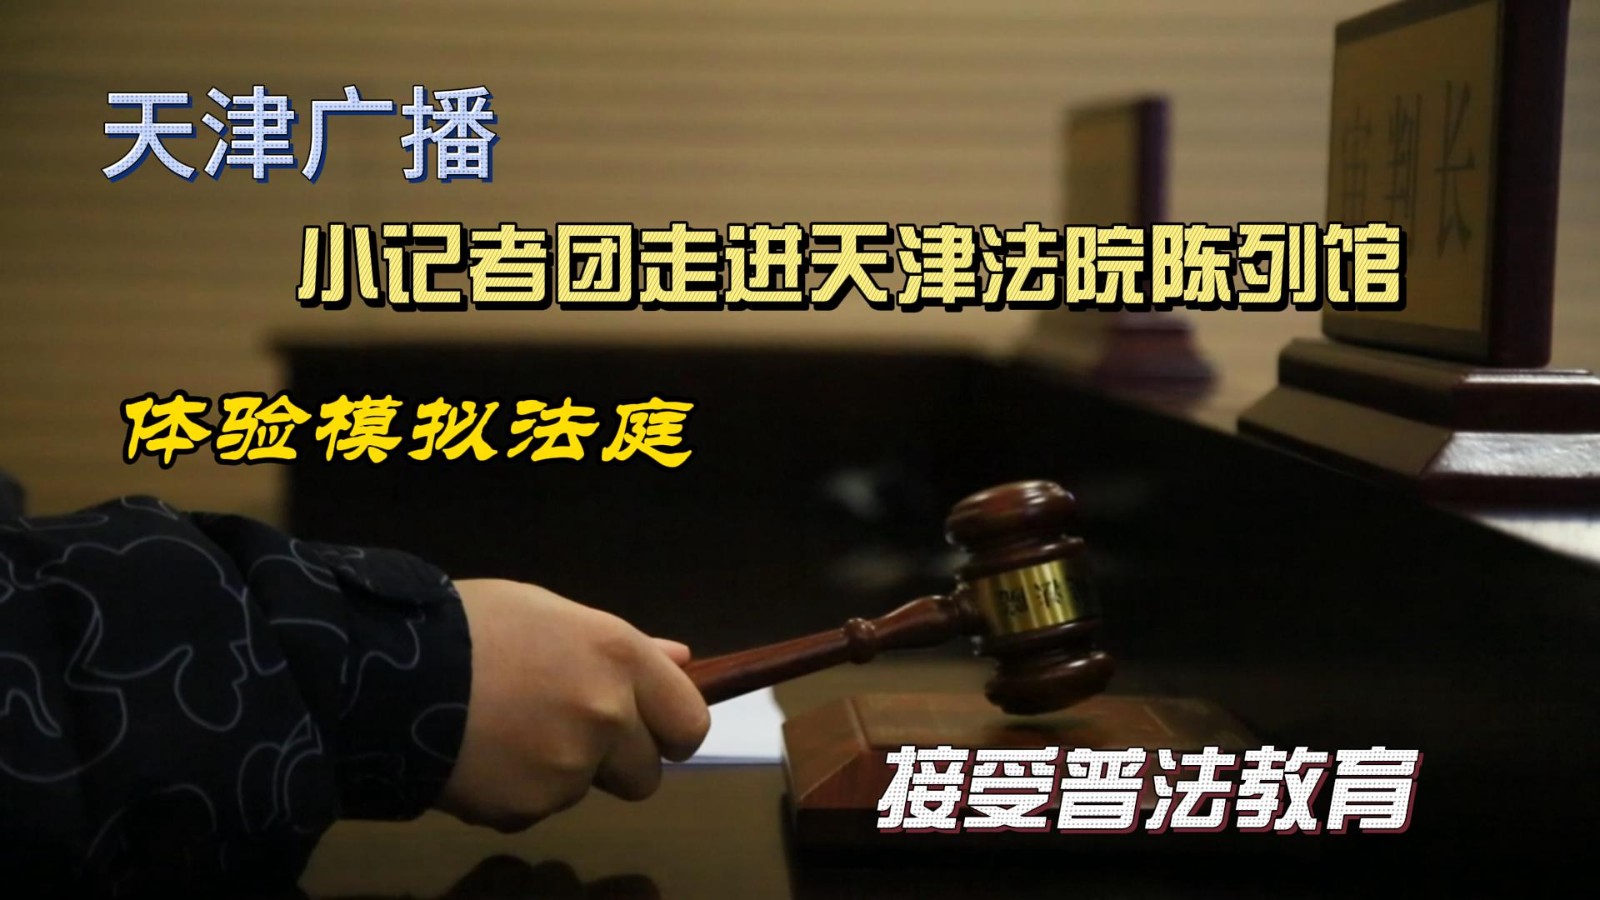 2月4日天津广播小记者团参观天津法院陈列馆